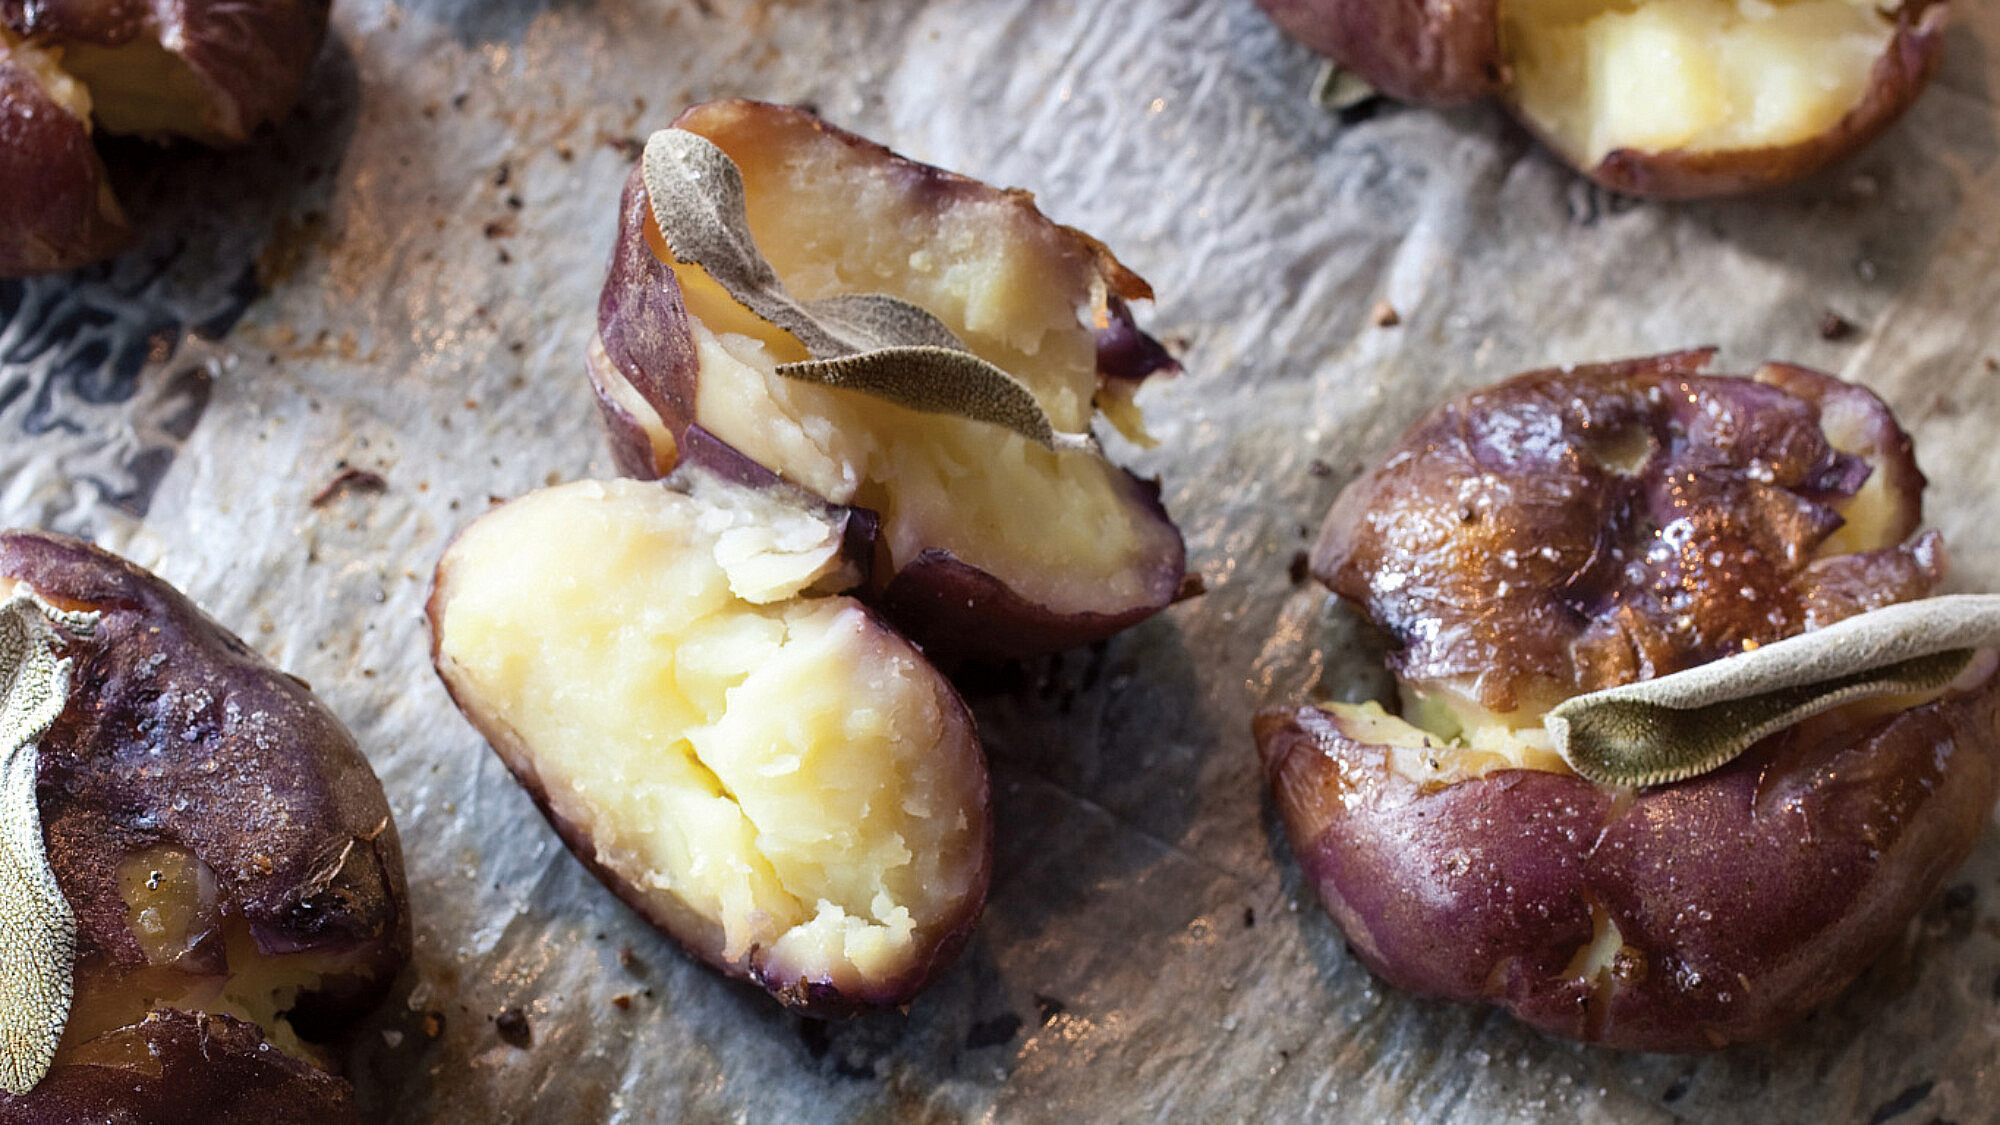 תפוחי אדמה שלמים מעוכים קלות ואפויים עם מרווה. צילום: דן לב | סגנון: אוריה גבע